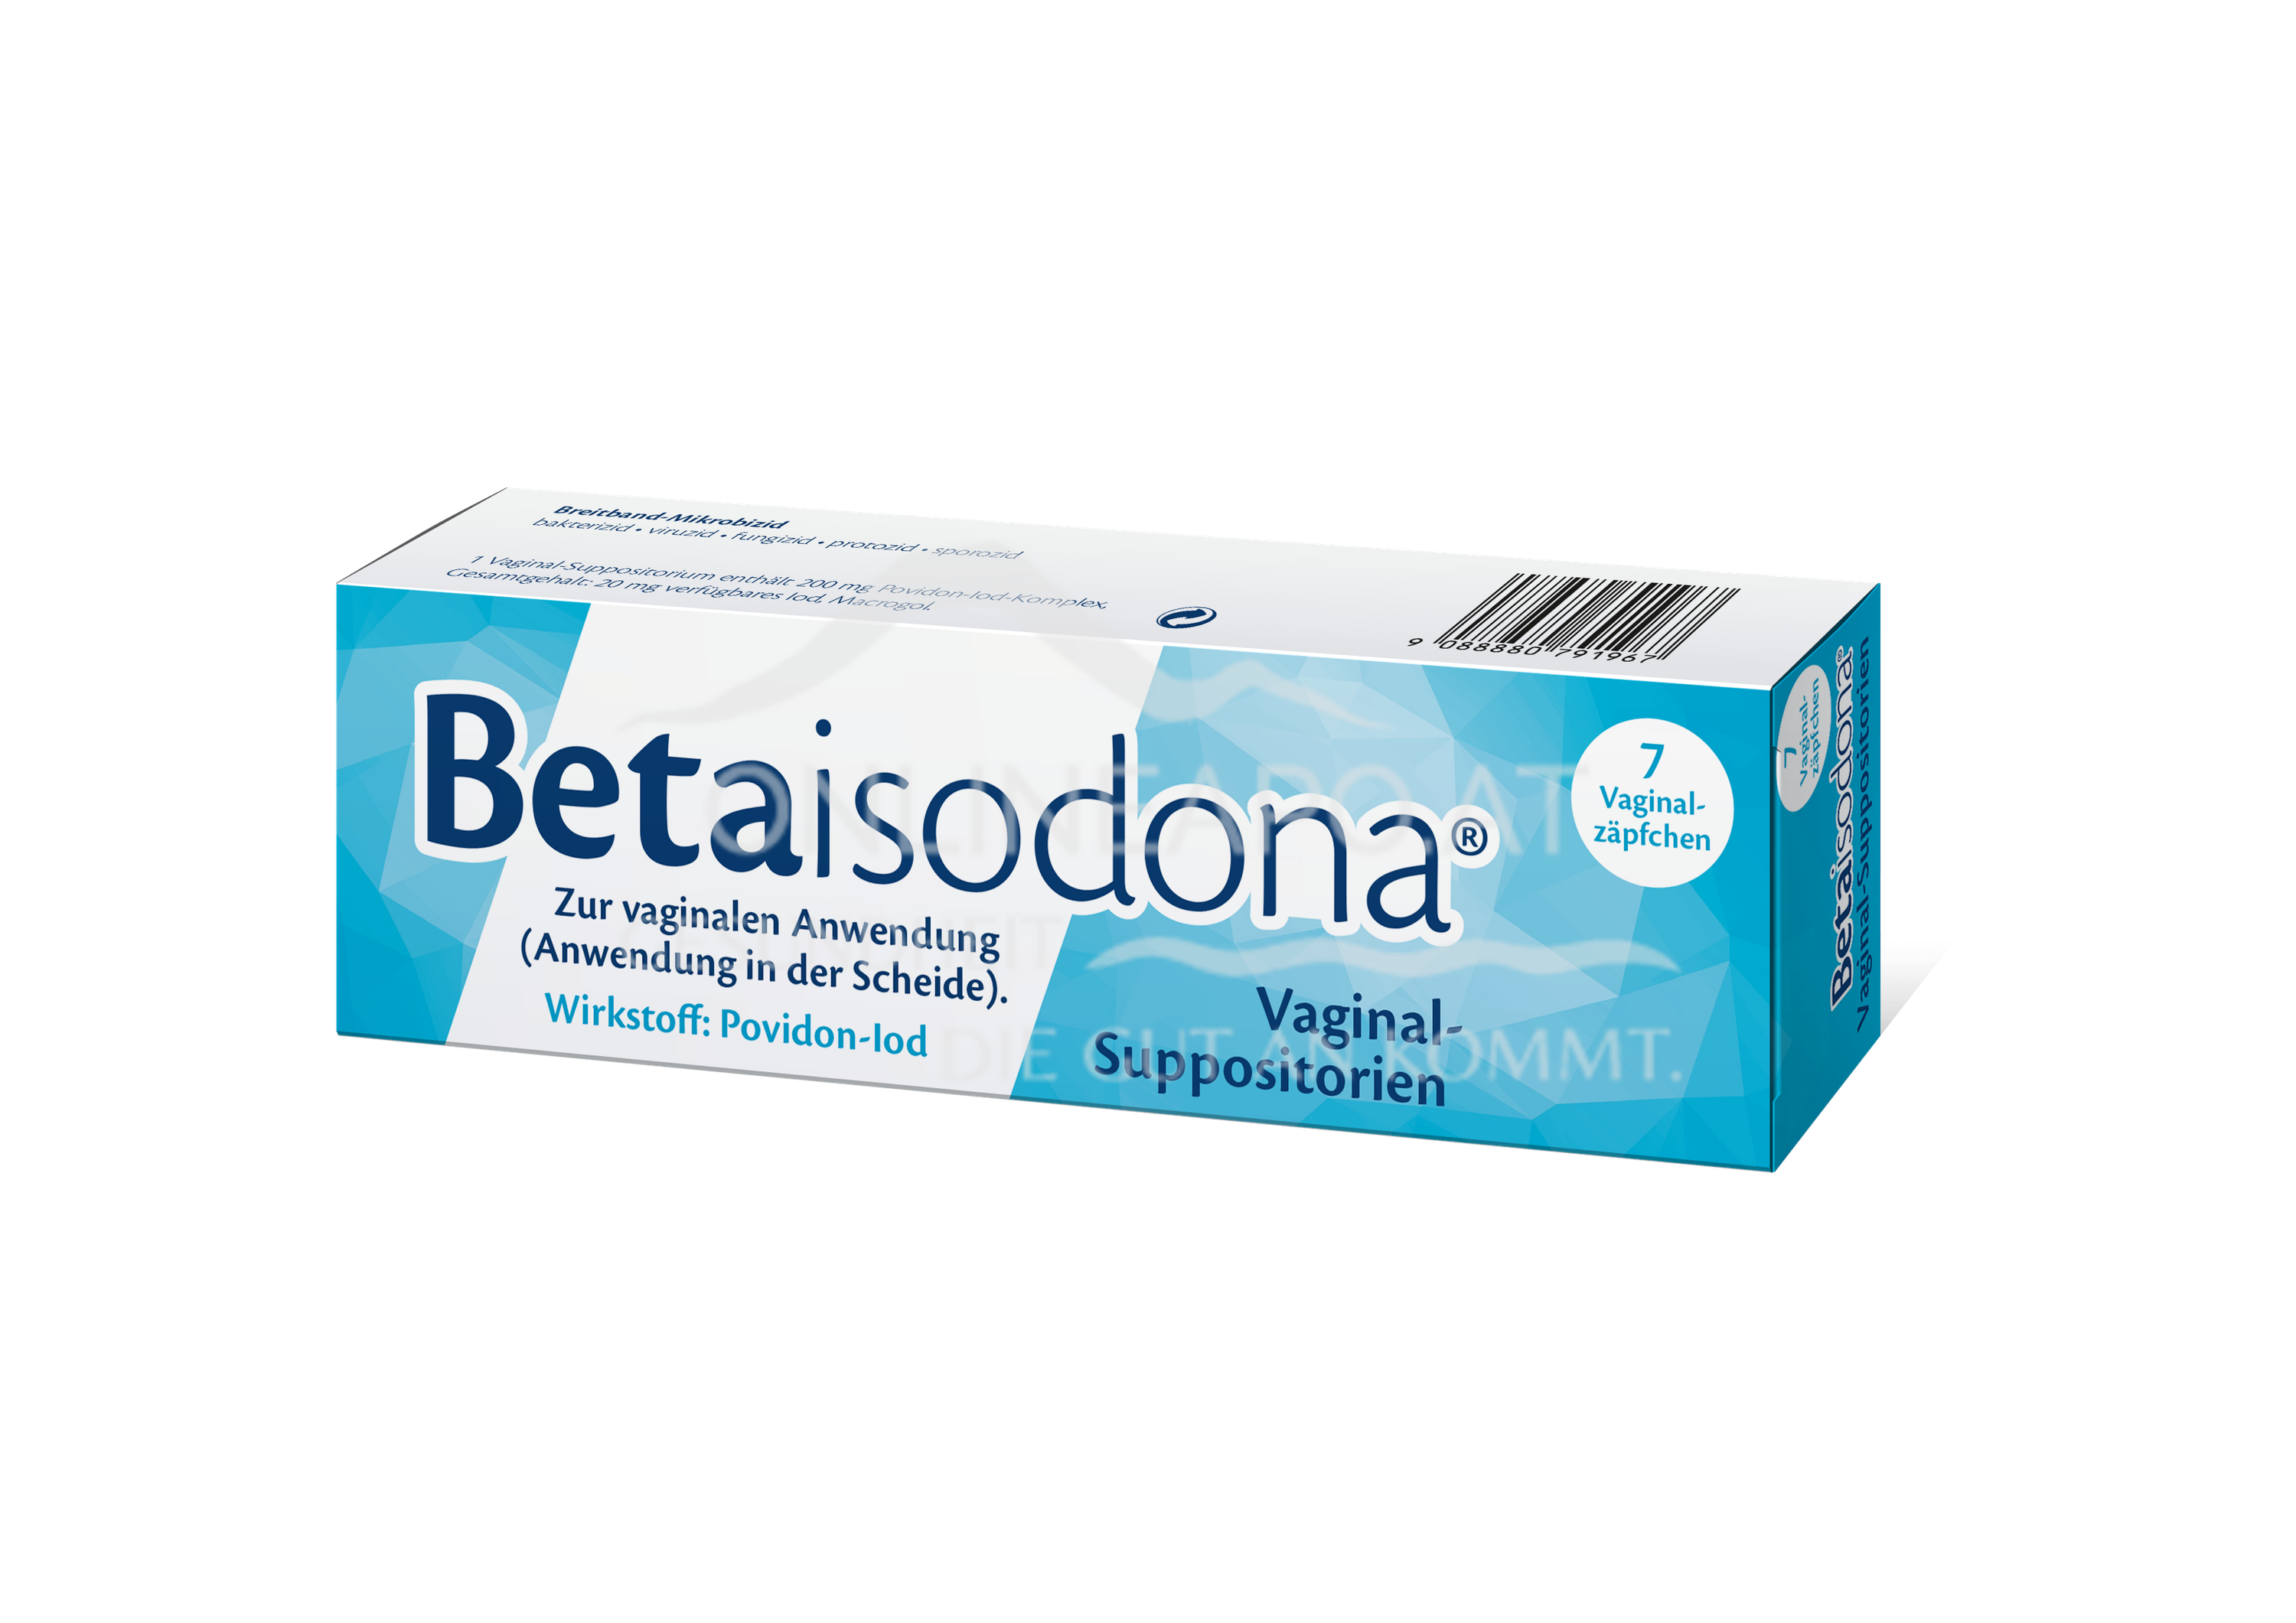 Betaisodona® Vaginal-Suppositorien